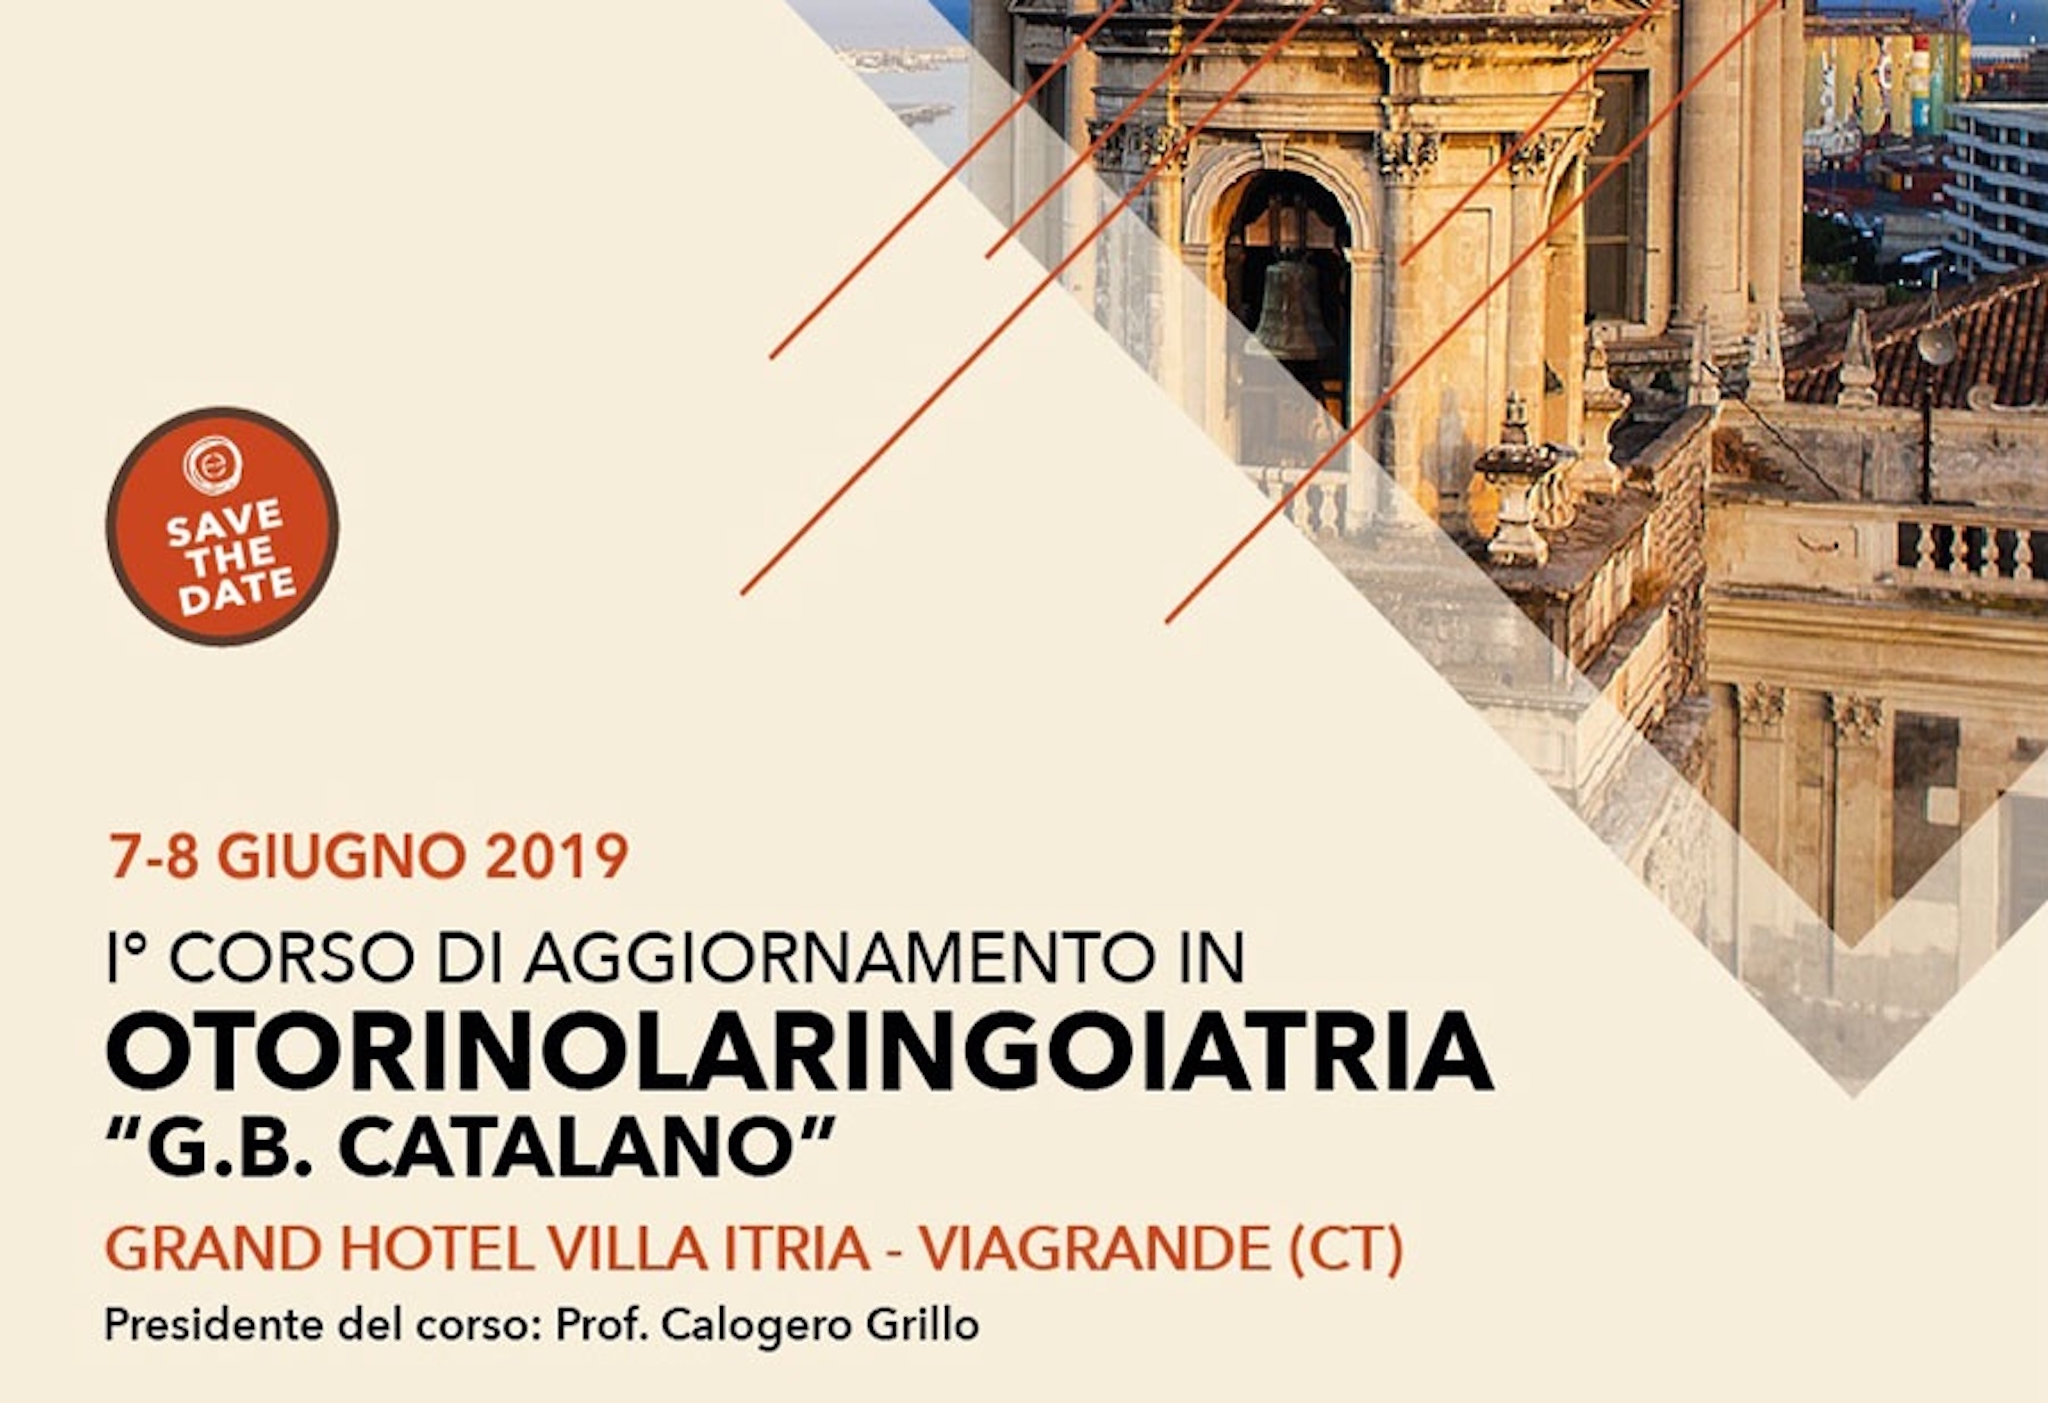 1° Corso di Aggiornamento in Otorinolaringoiatria "G.B. Catalano" - 7-8 Giugno 2019